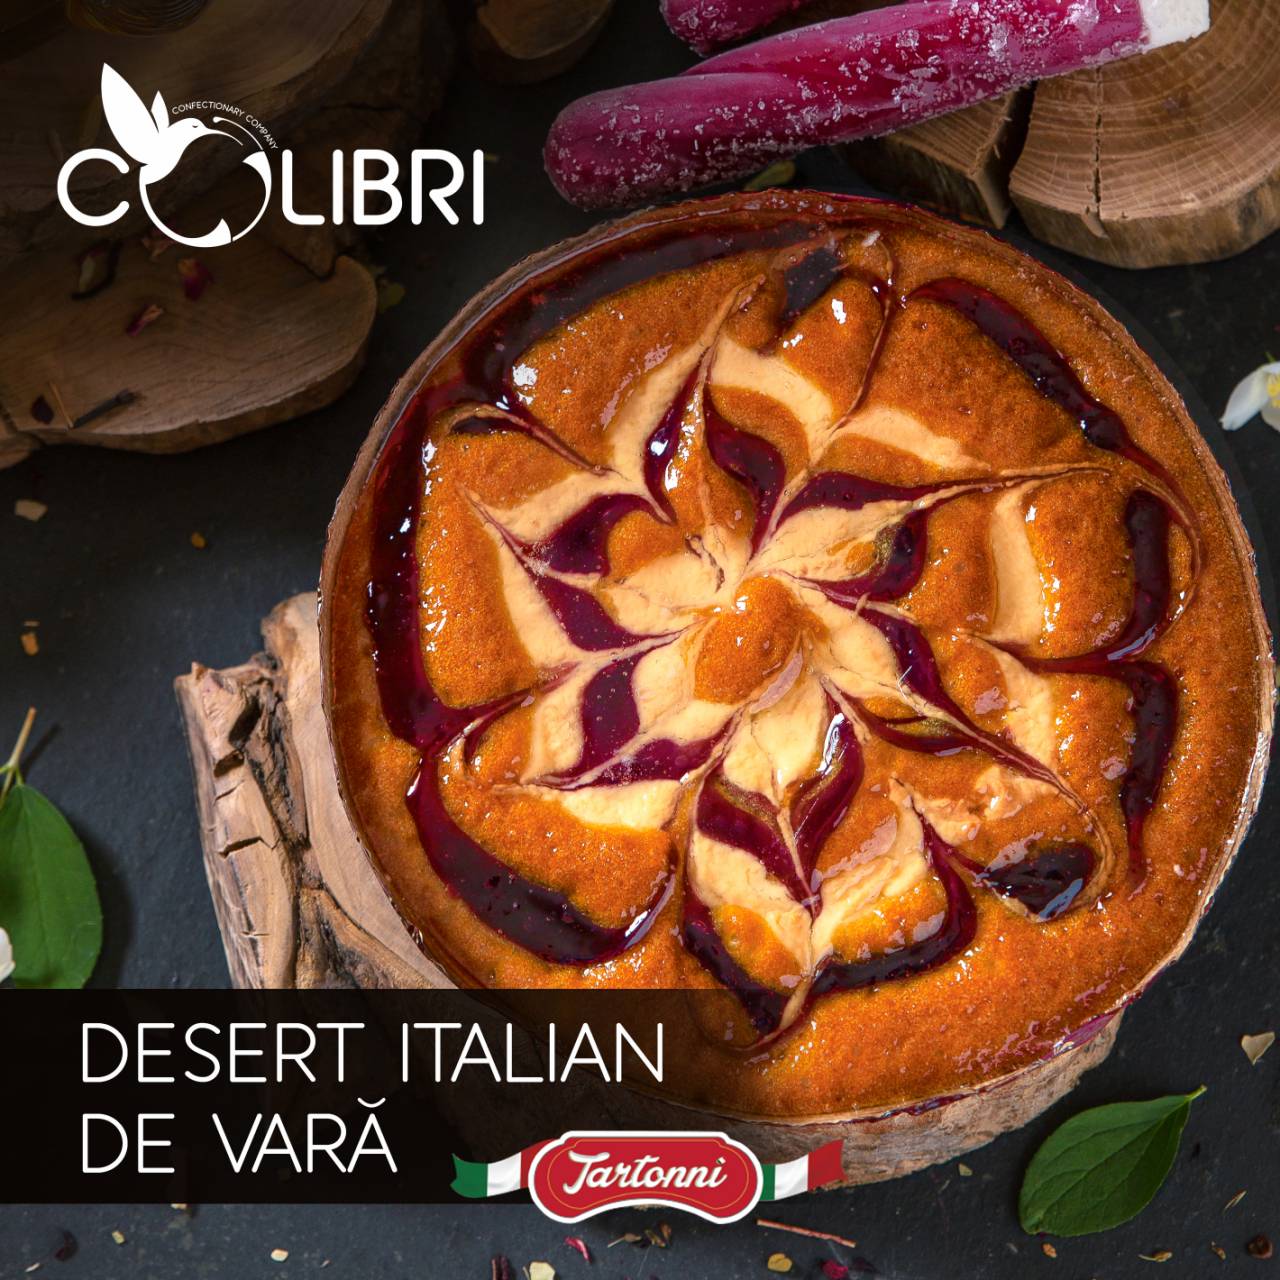 Delicatul desert italian îi va cuceri pe toți iubitorii de dulce în această vară